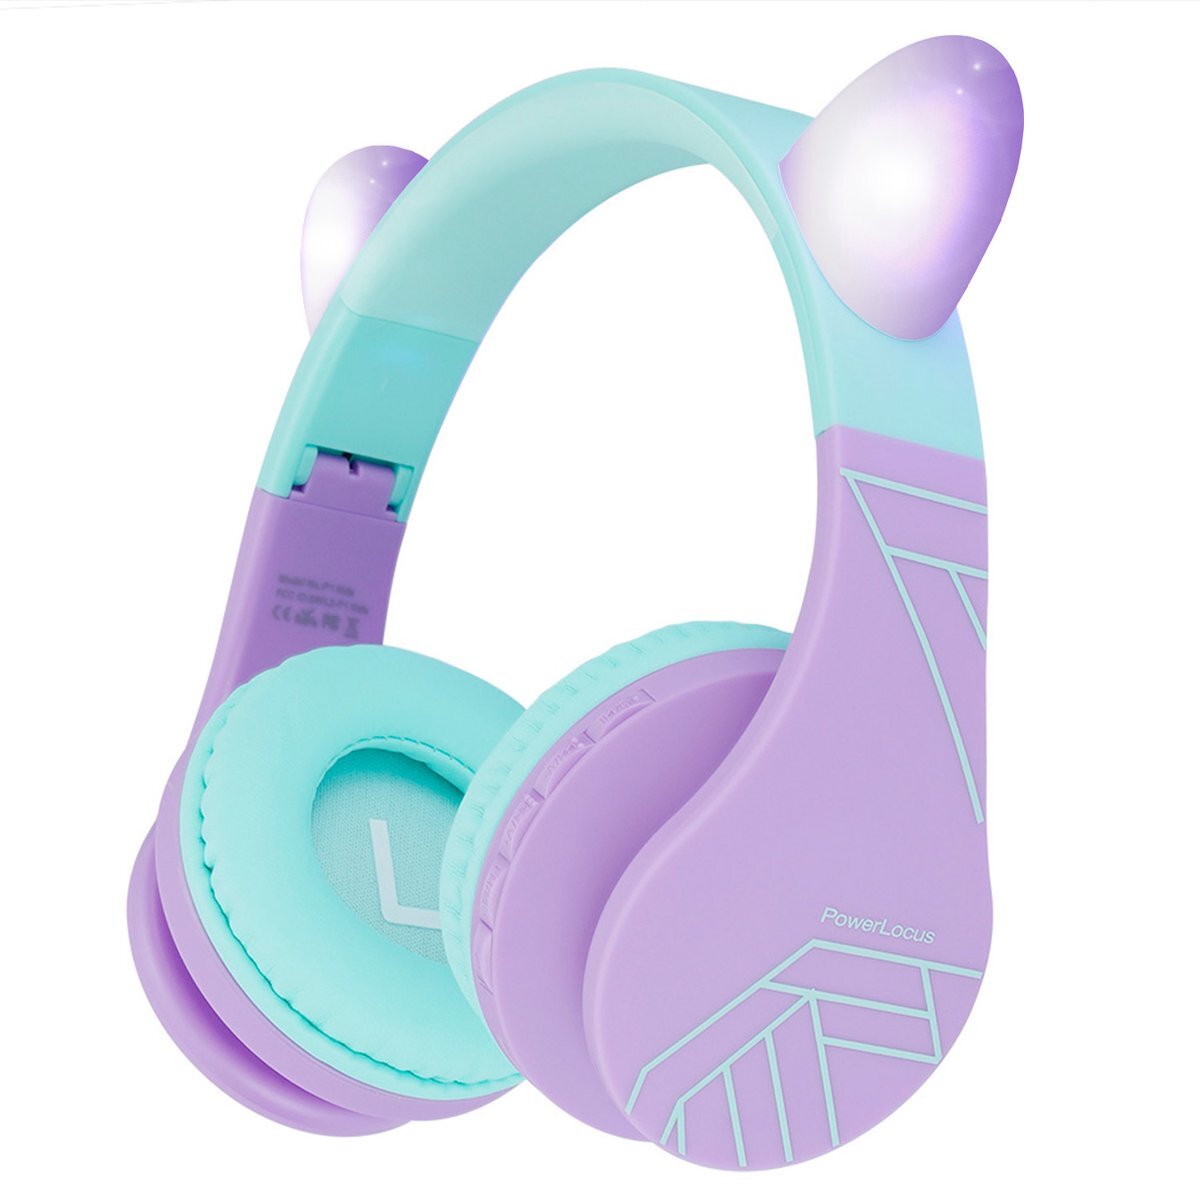 PowerLocus P1 draadloze Over-Ear Koptelefoon Inklapbaar koptelefoon voor kinderen - veilig volume van 85 dB - Bluetooth Hoofdtelefoon - Met microfoon paars/teal met oren